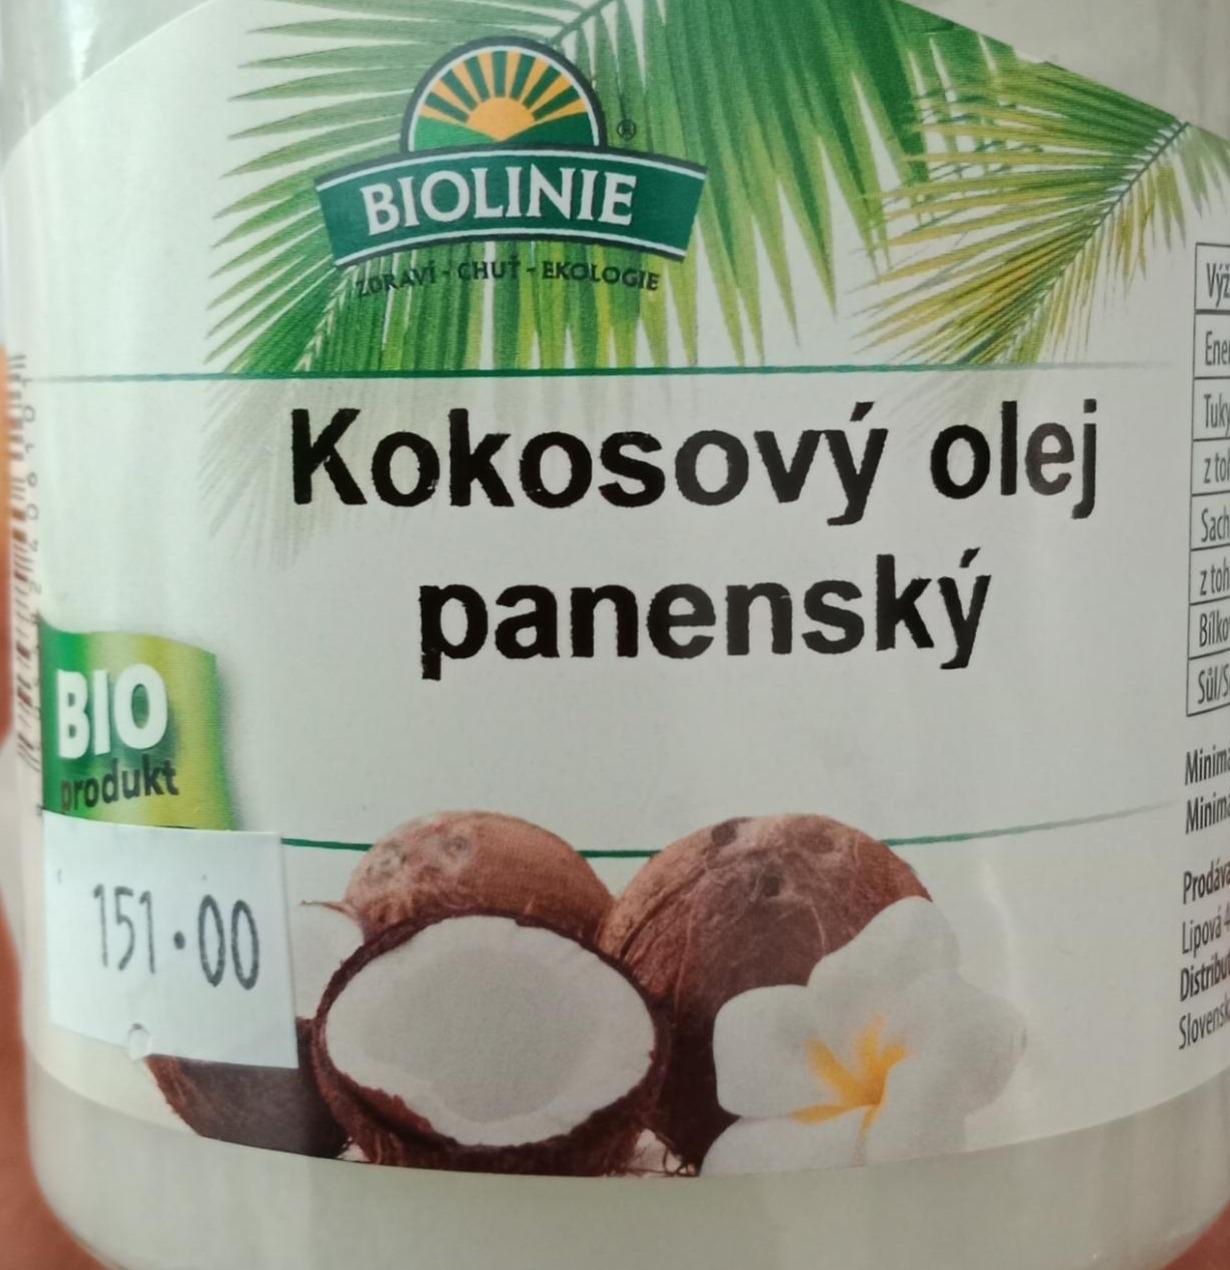 Fotografie - Bio Olej kokosový panenský Biolinie